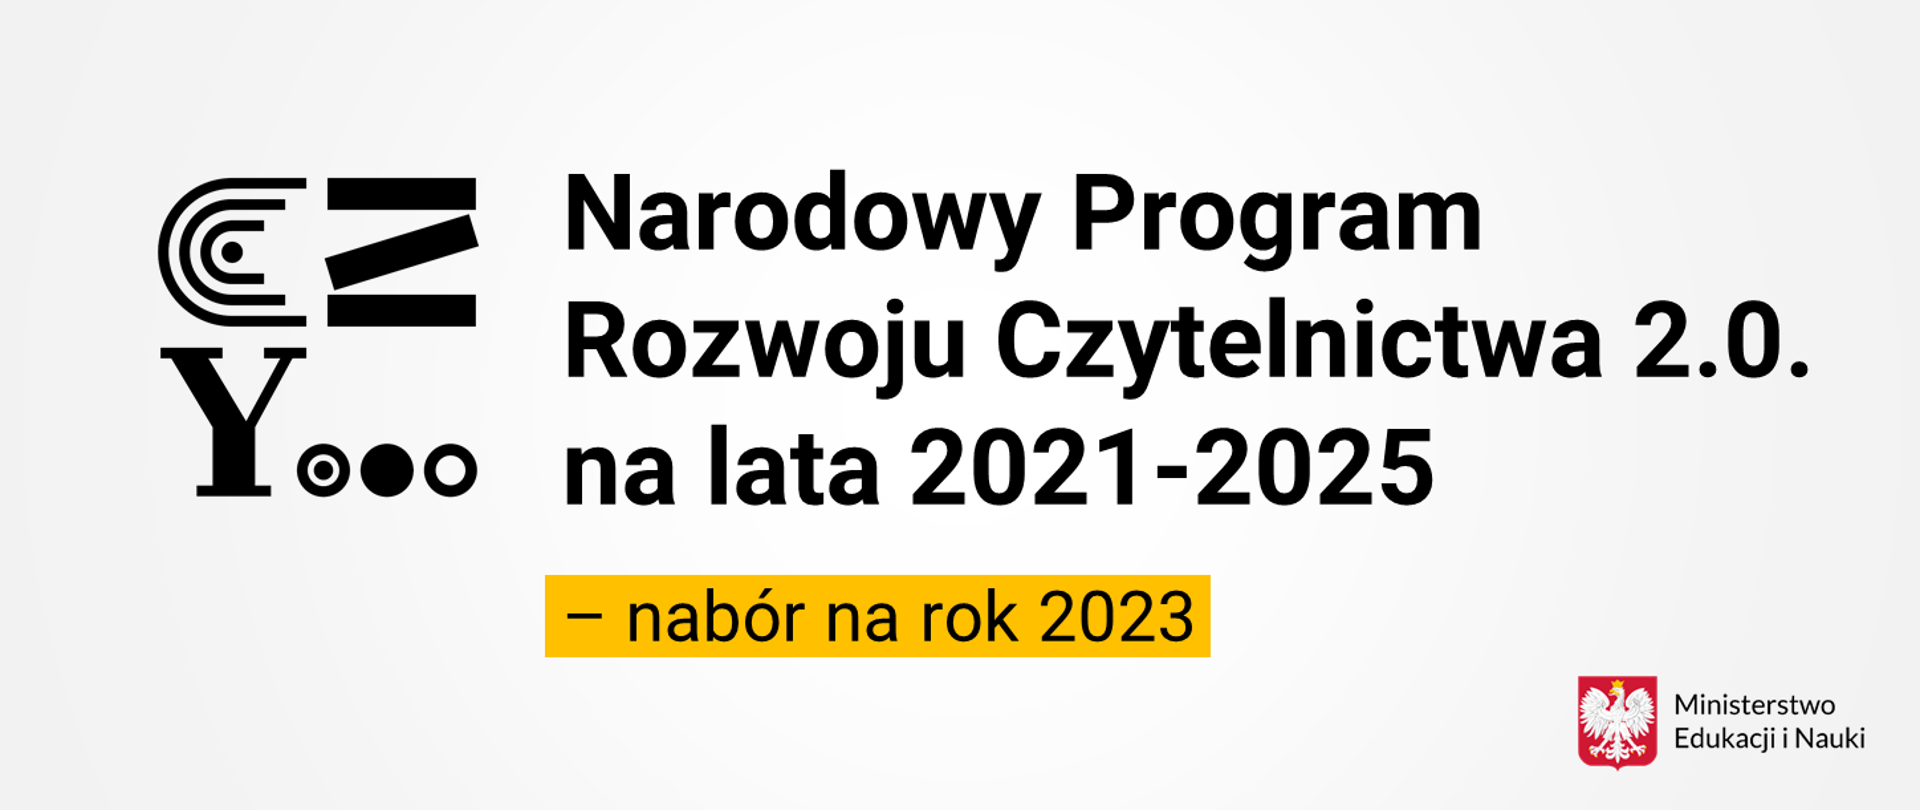 Logotyp programu Narodowy Program Rozwoju Czytelnictwa 2.0. na lata 2021-2025 – nabór na rok 2023 